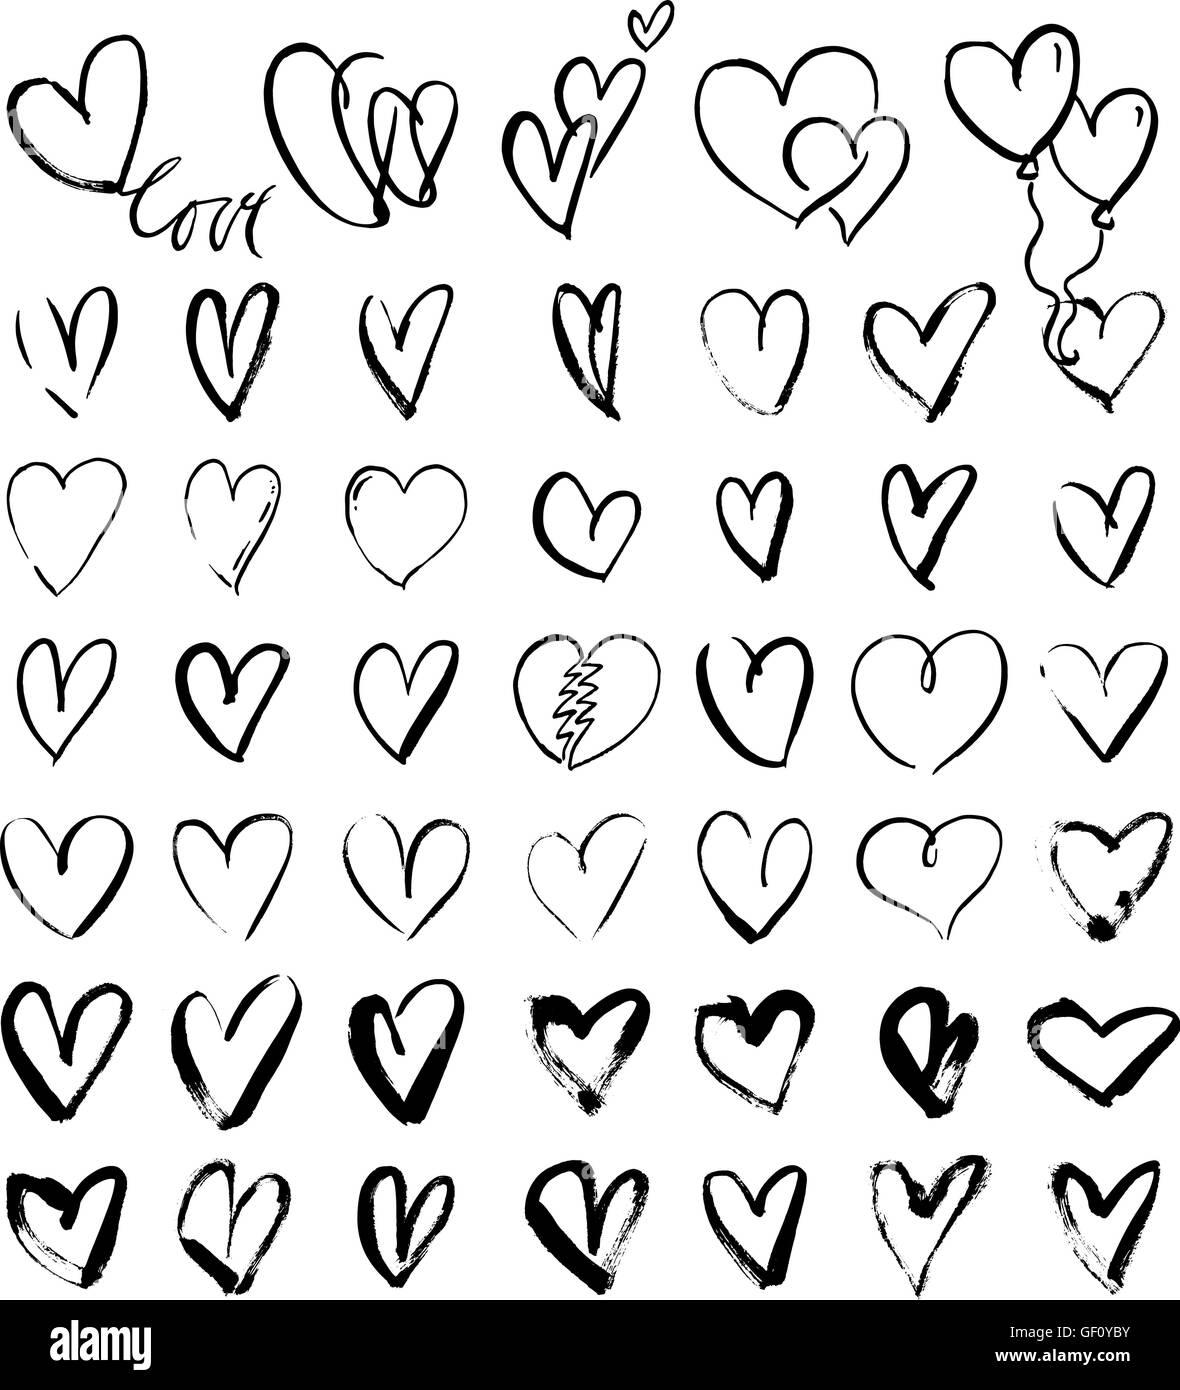 Coeur d'amour vide Banque d'images noir et blanc - Page 3 - Alamy